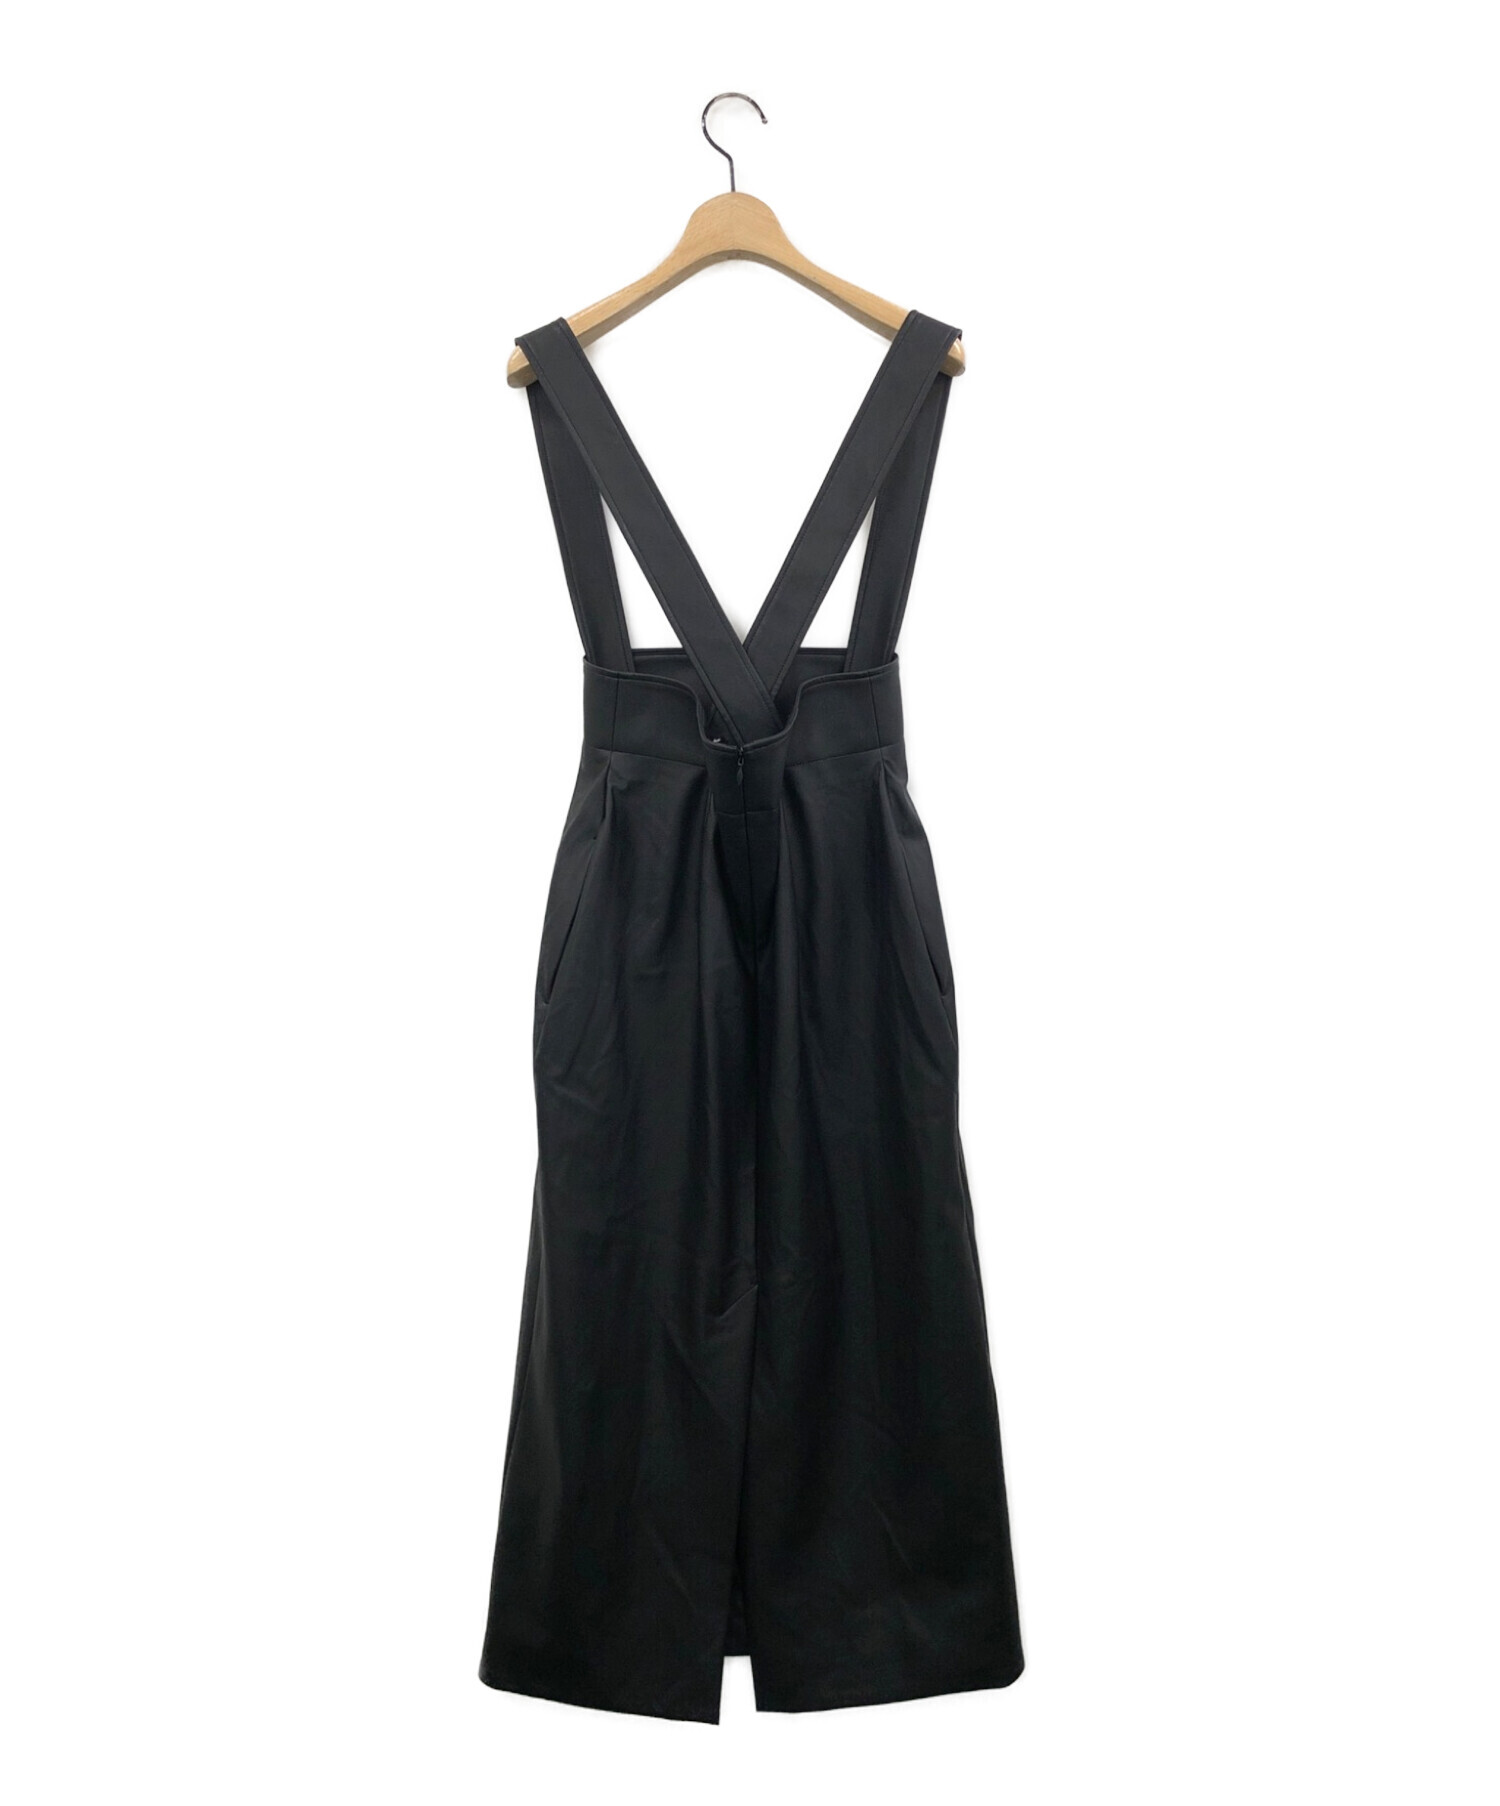 UNITED ARROWS (ユナイテッドアローズ) フェイクレザースカート ブラック サイズ:38